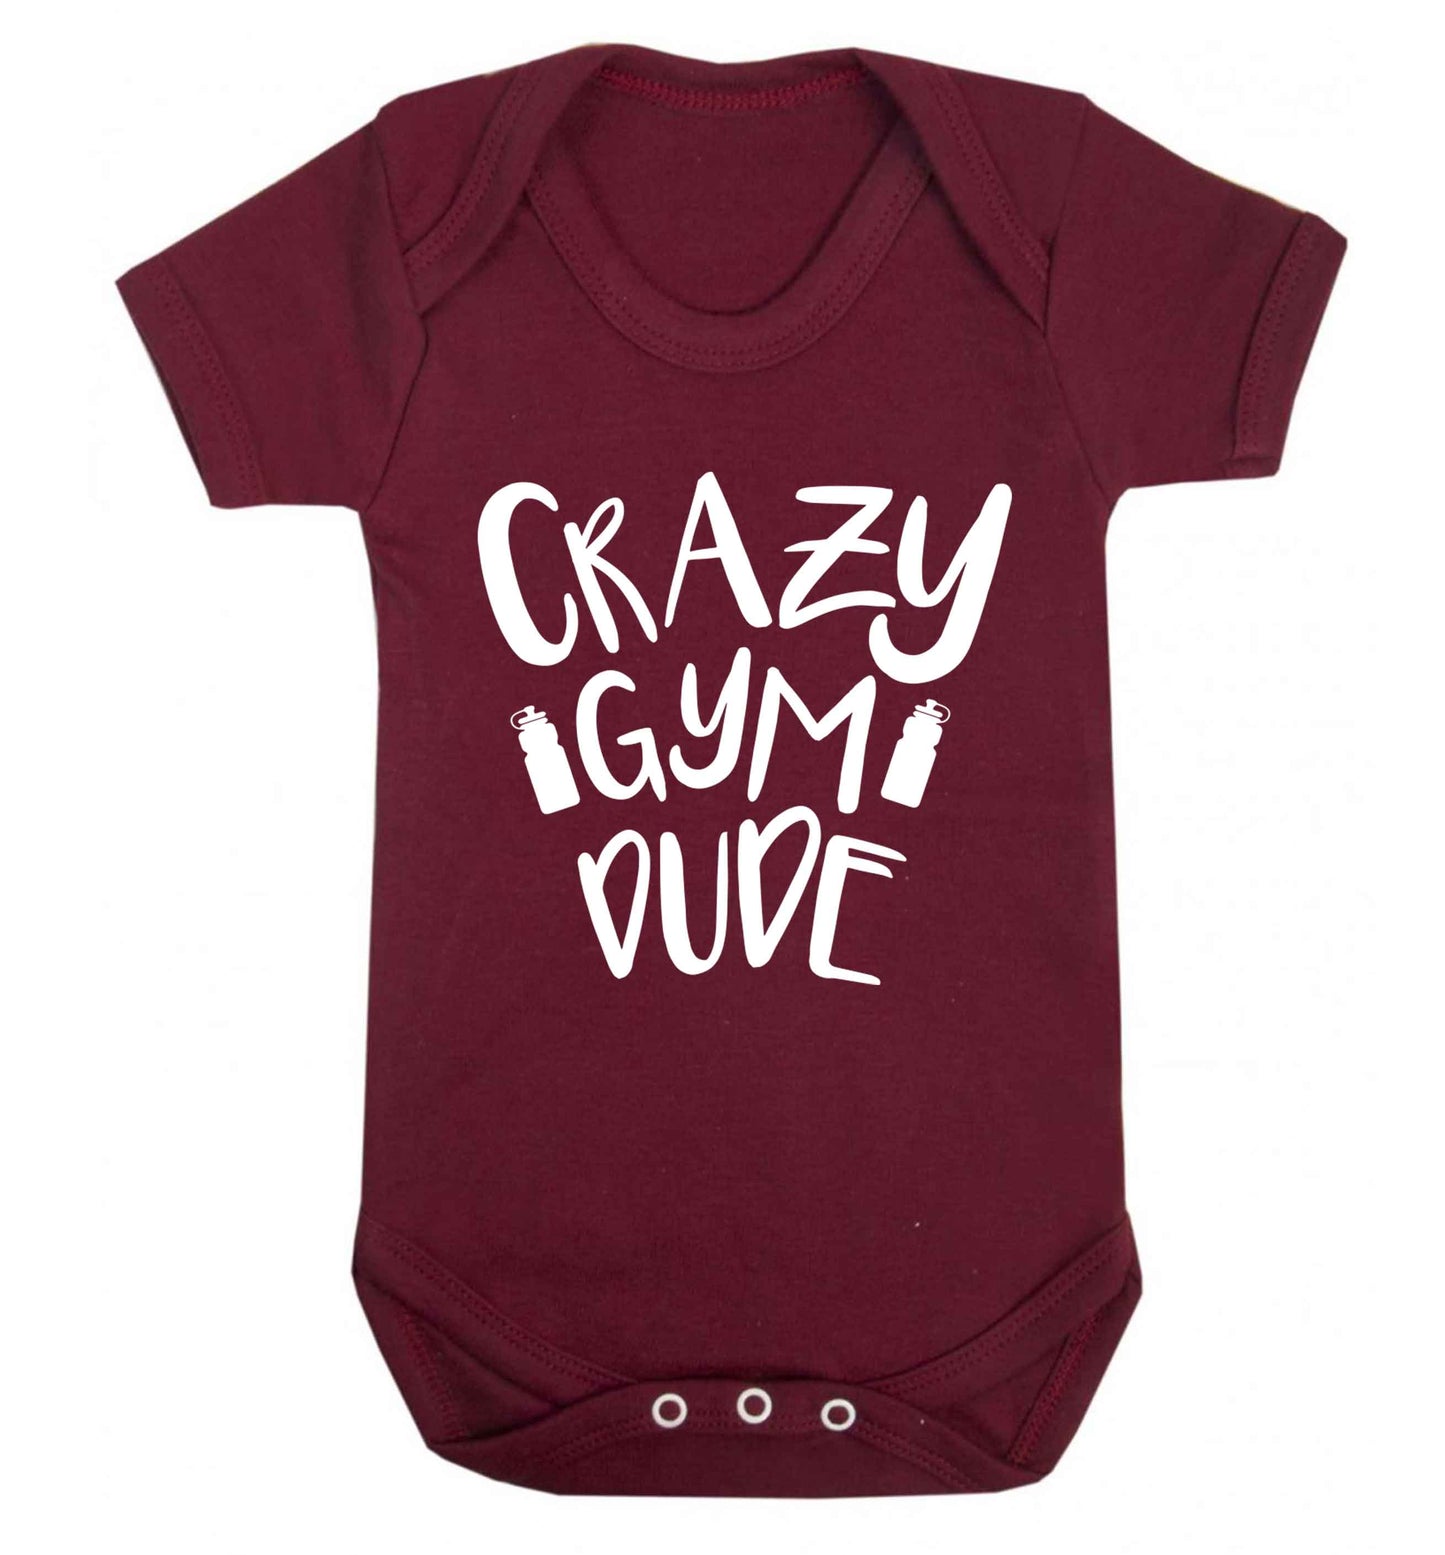 Crazy gym dude Baby Vest maroon 18-24 months